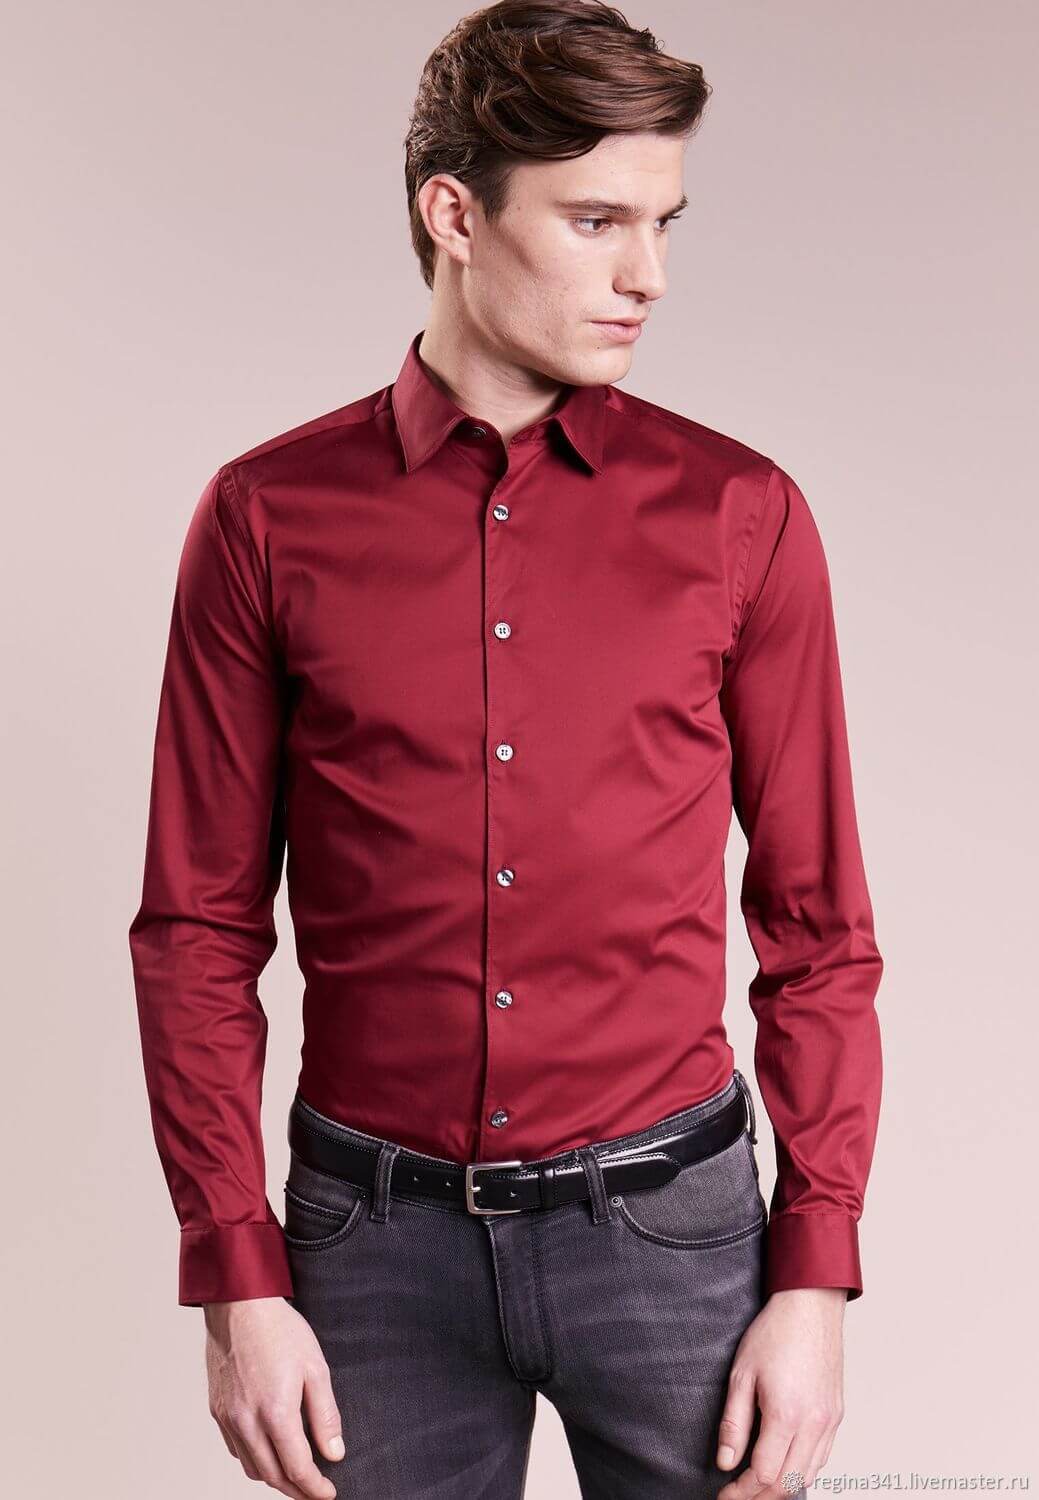 Рубашка мужская купить в интернет магазине. Рубашка мужская. Бордовая рубашка мужская. Шелковая рубашка мужская. Яркая рубашка.